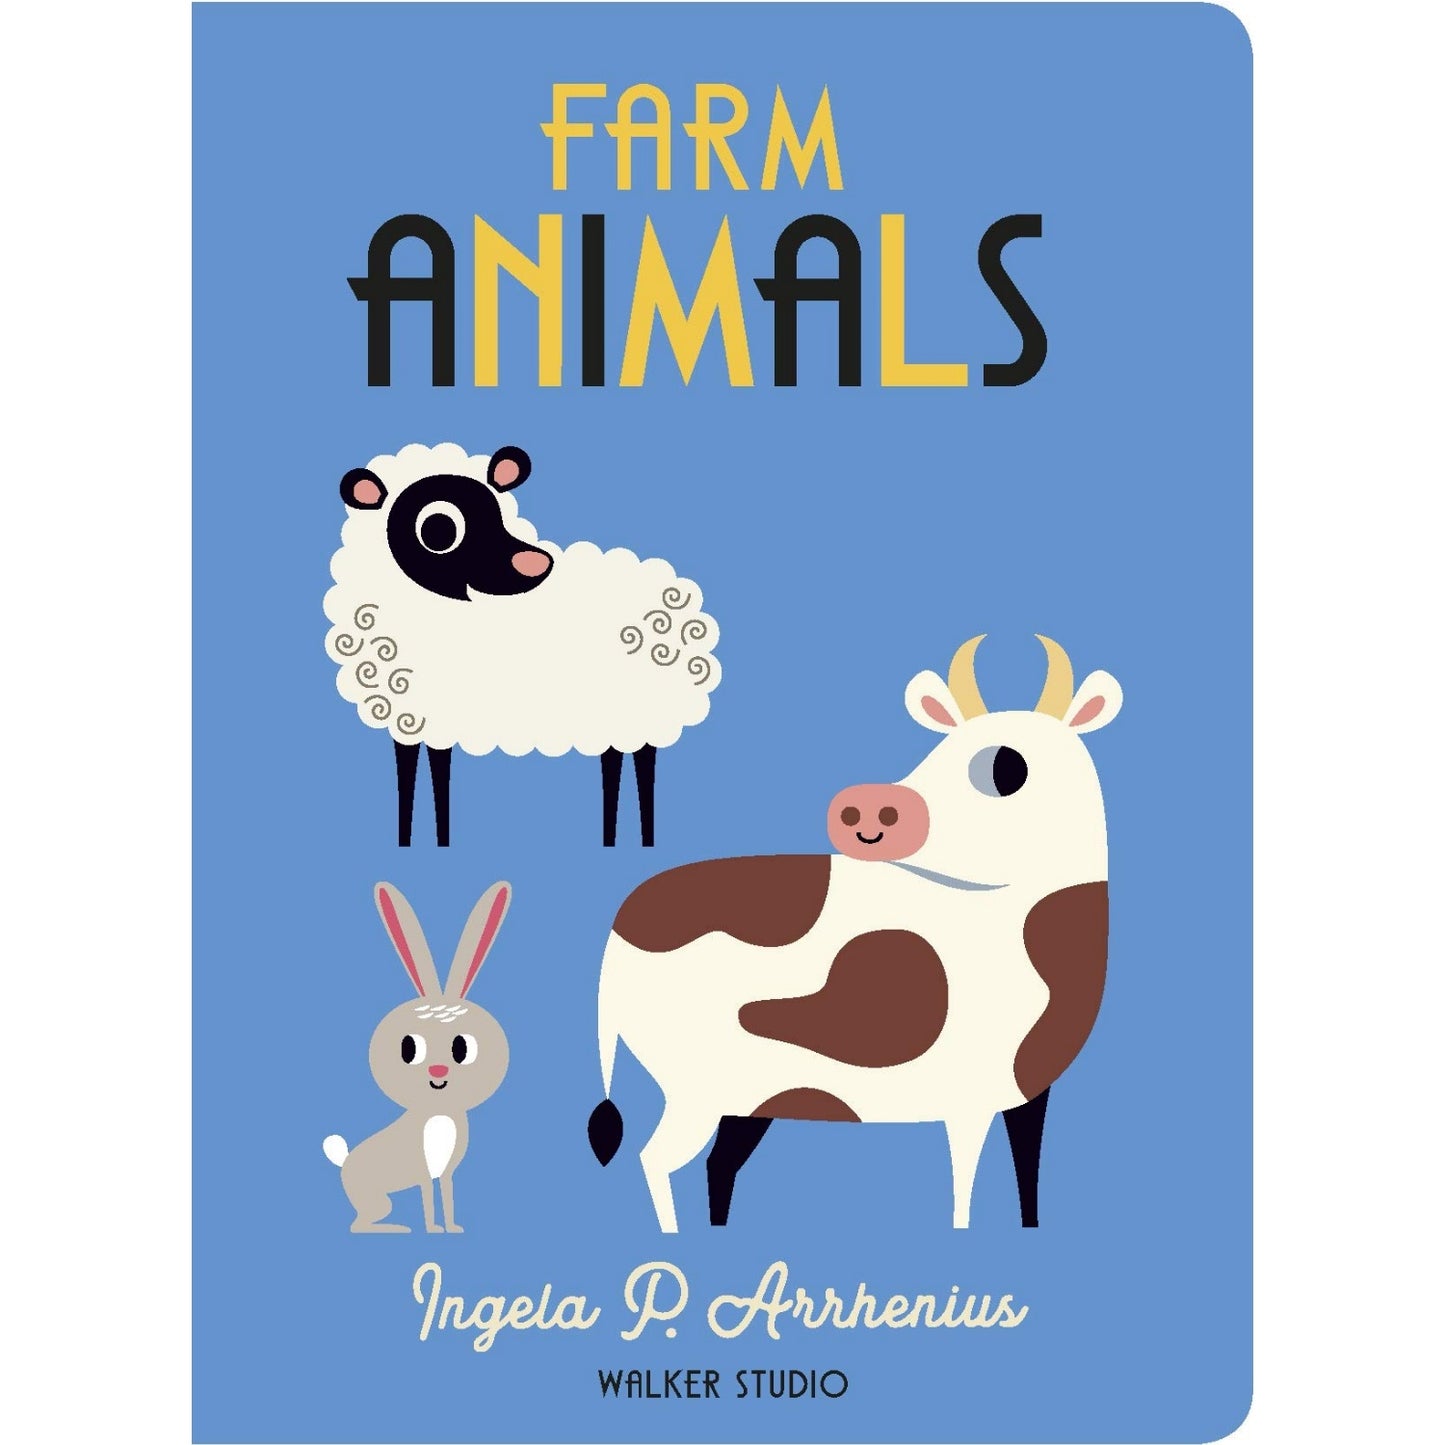 Farm Animals | Children's Board Book on Farm Life